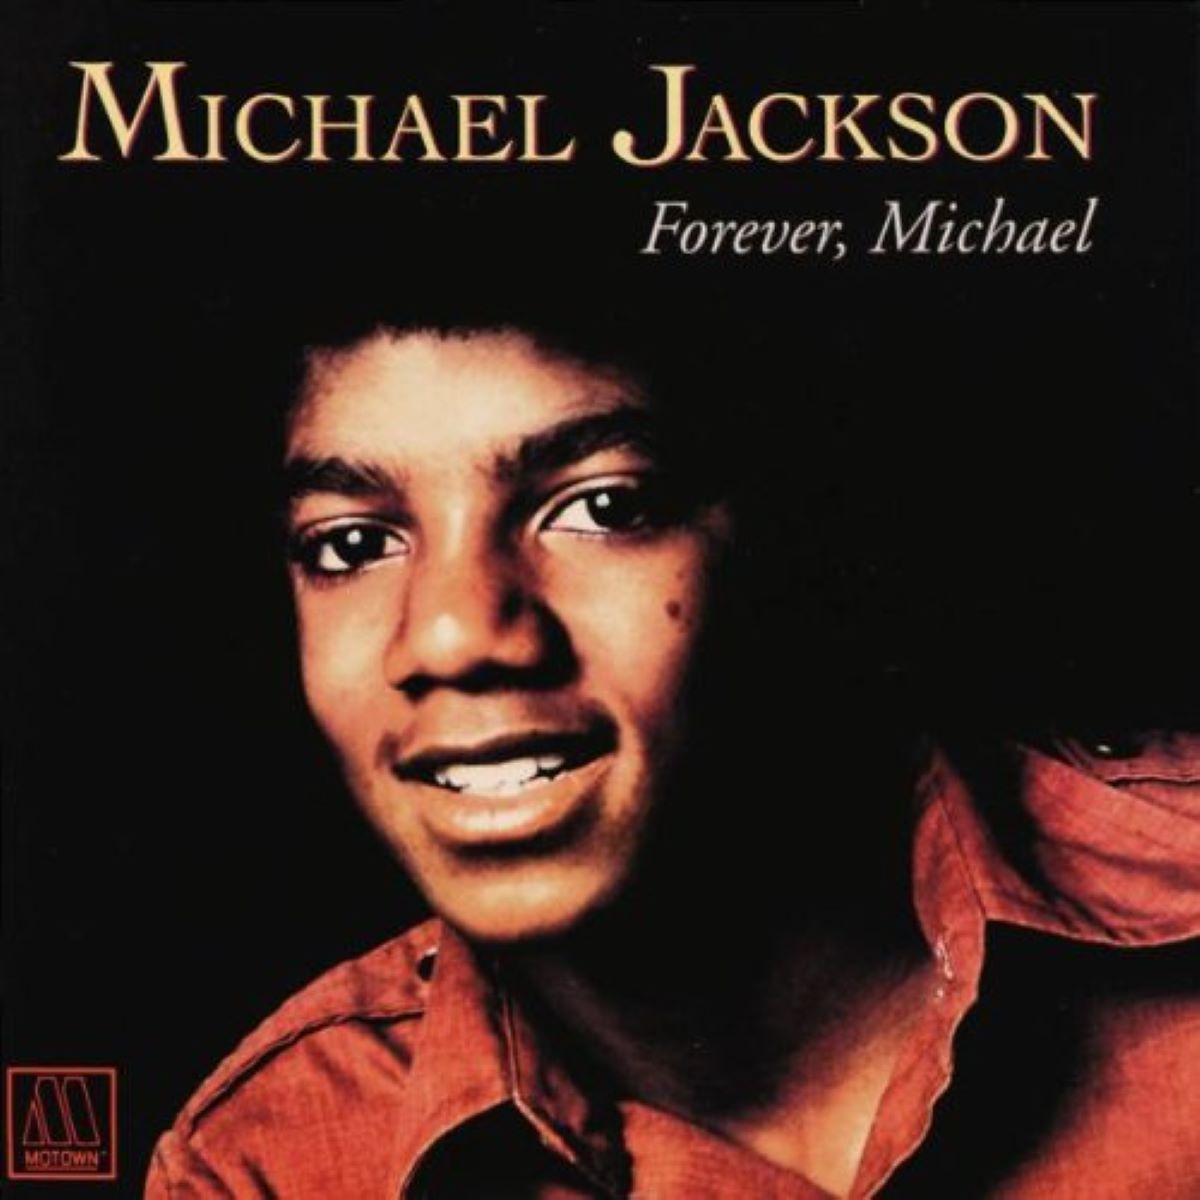 04. Forever, Michael (1975)